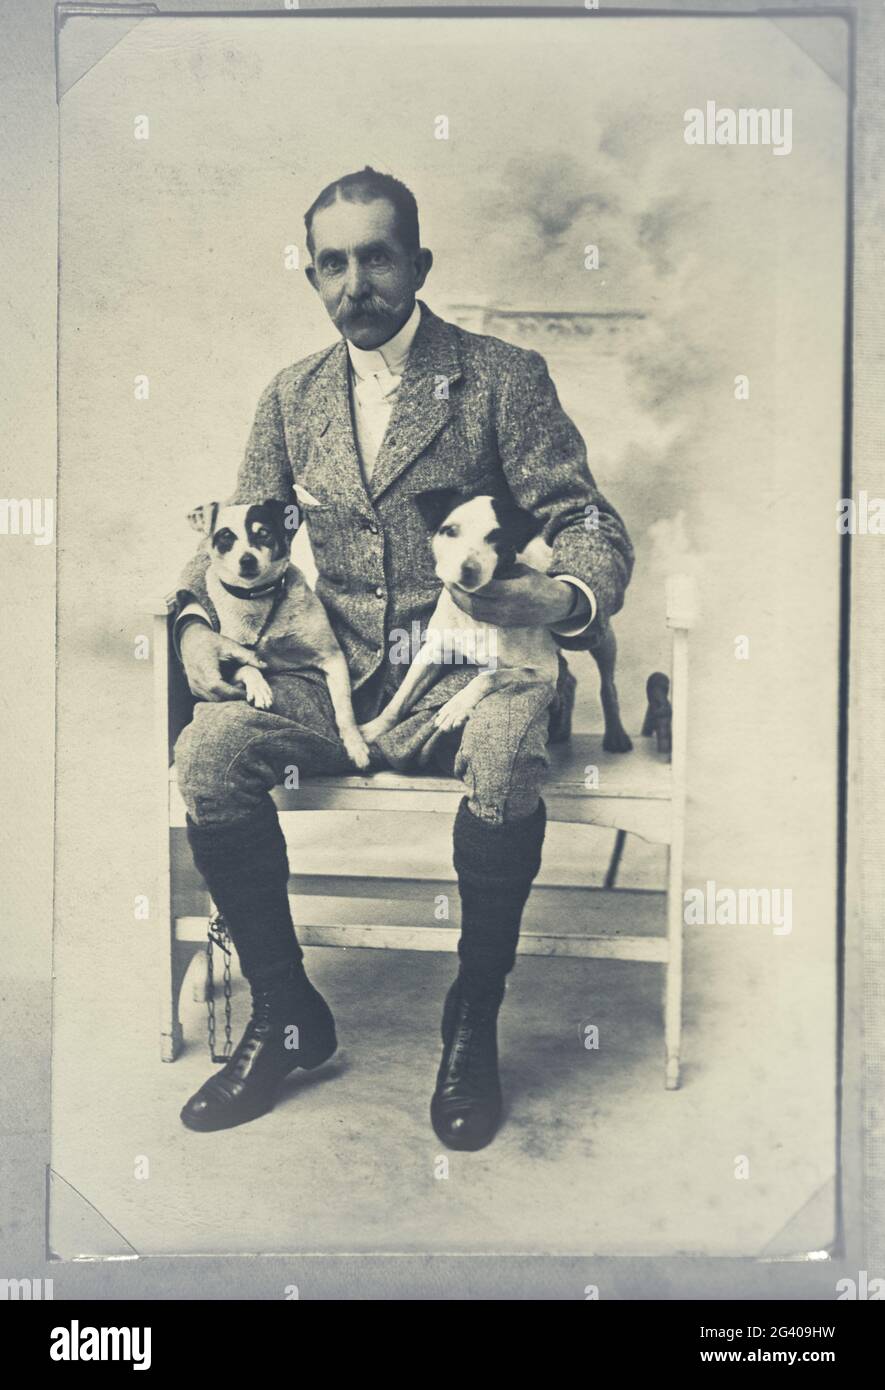 Photographie vintage authentique d'un homme adulte senior assis sur une chaise tenant deux chiens. Concept de la convivialité, de l'amitié, meilleur ami des ans Banque D'Images